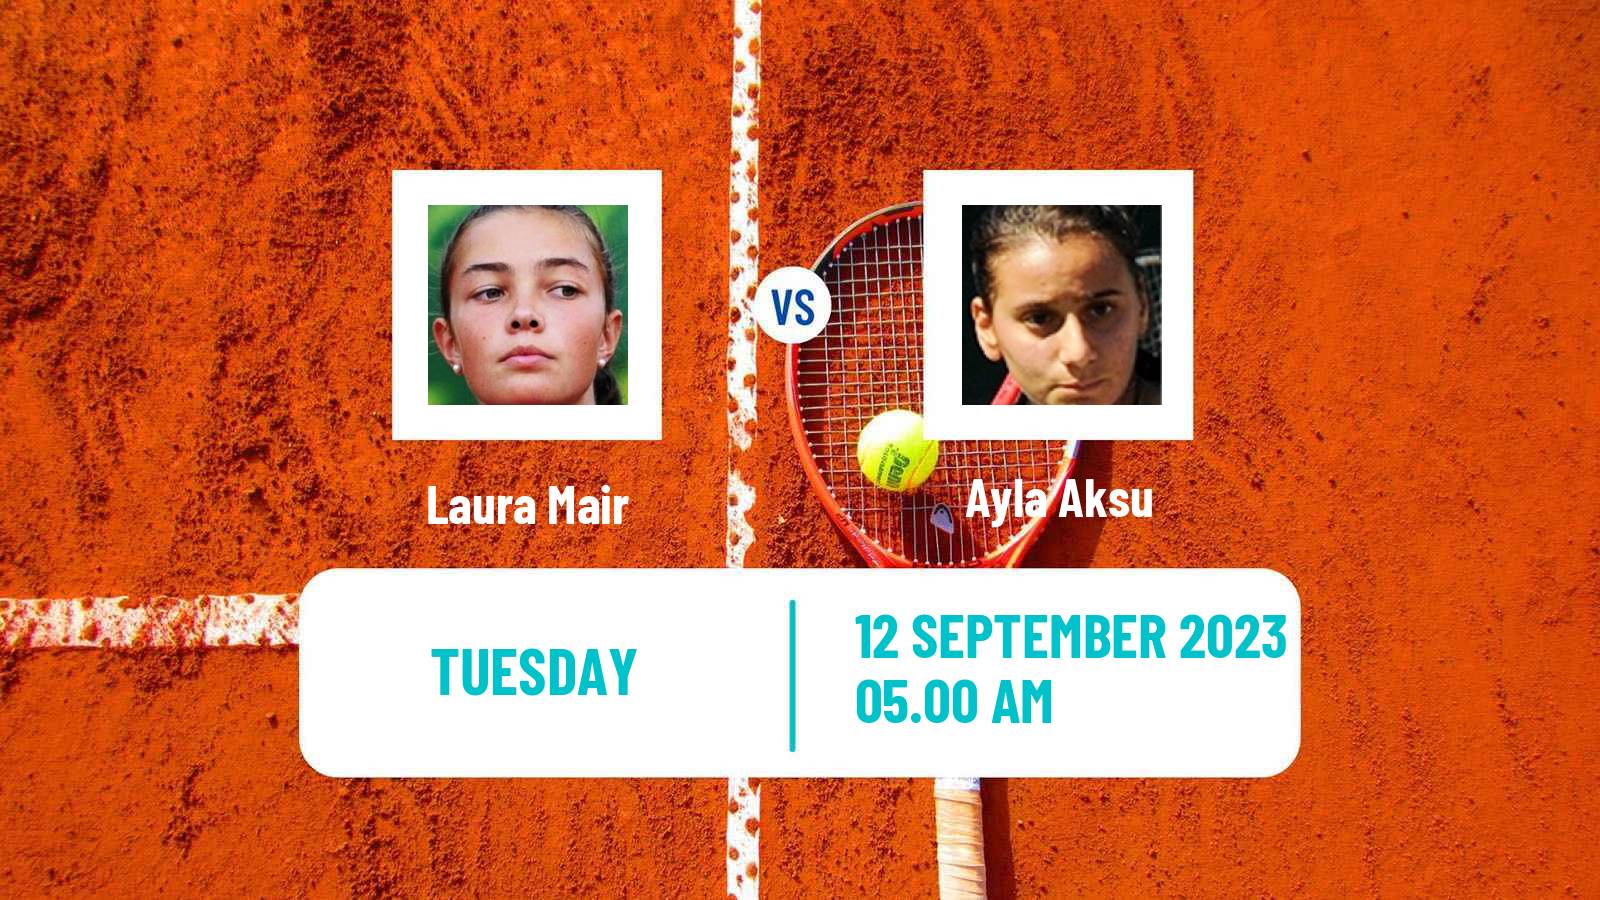 Tennis ITF W40 Skopje Women Laura Mair - Ayla Aksu